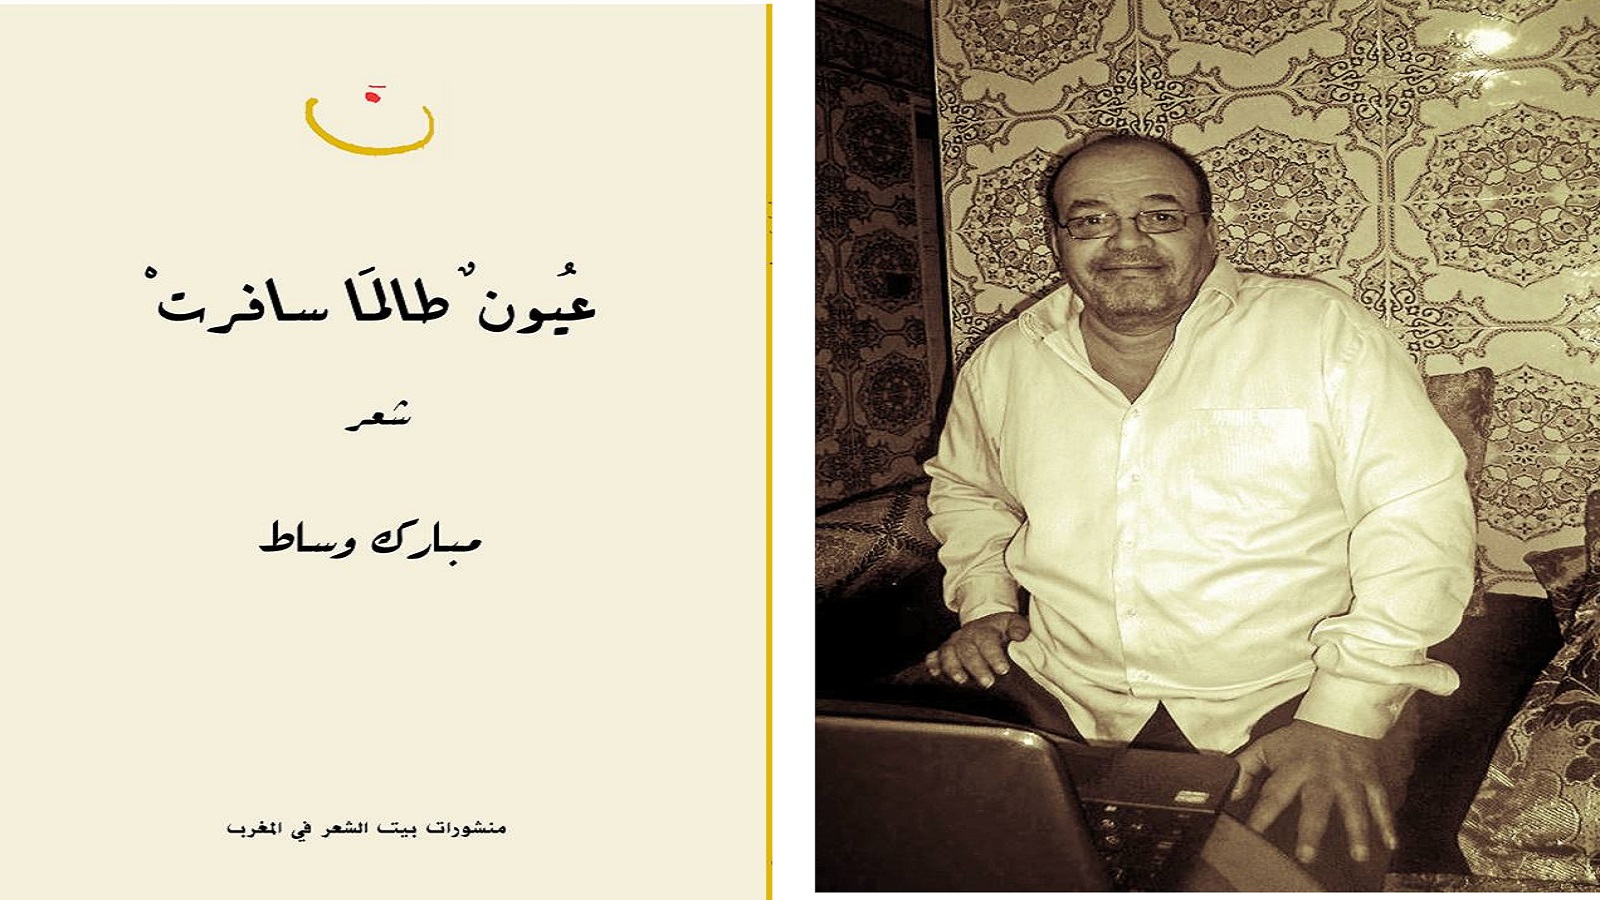 جائزة سركون بولص للشعر وترجمته 2018، إلى مبارك وساط